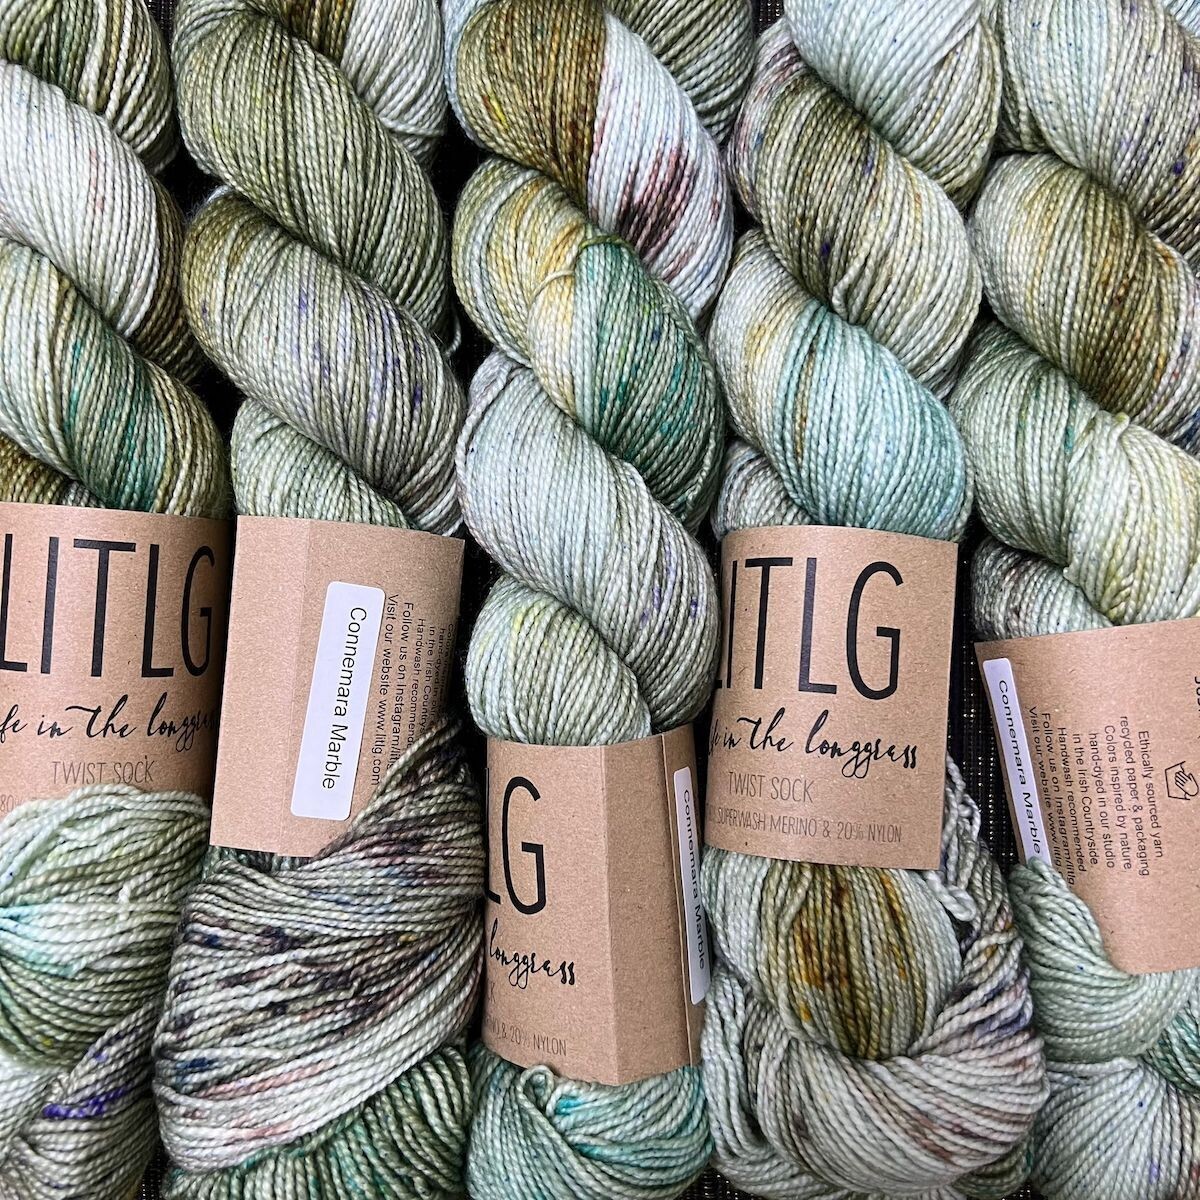 LITLG twist sock yarn Connemara Mable